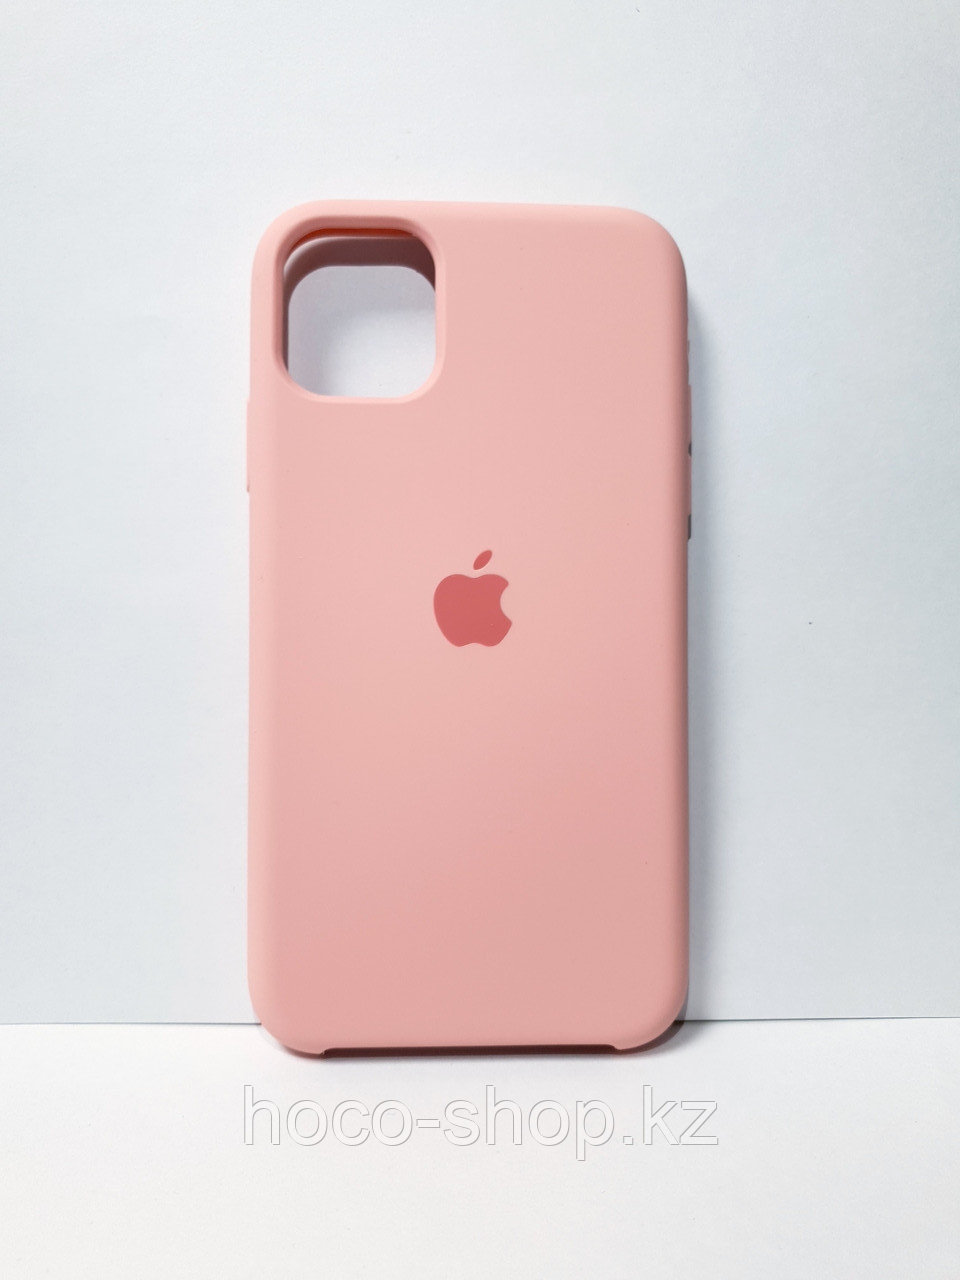 Защитный чехол для iPhone 11 Soft Touch силиконовый, розовый